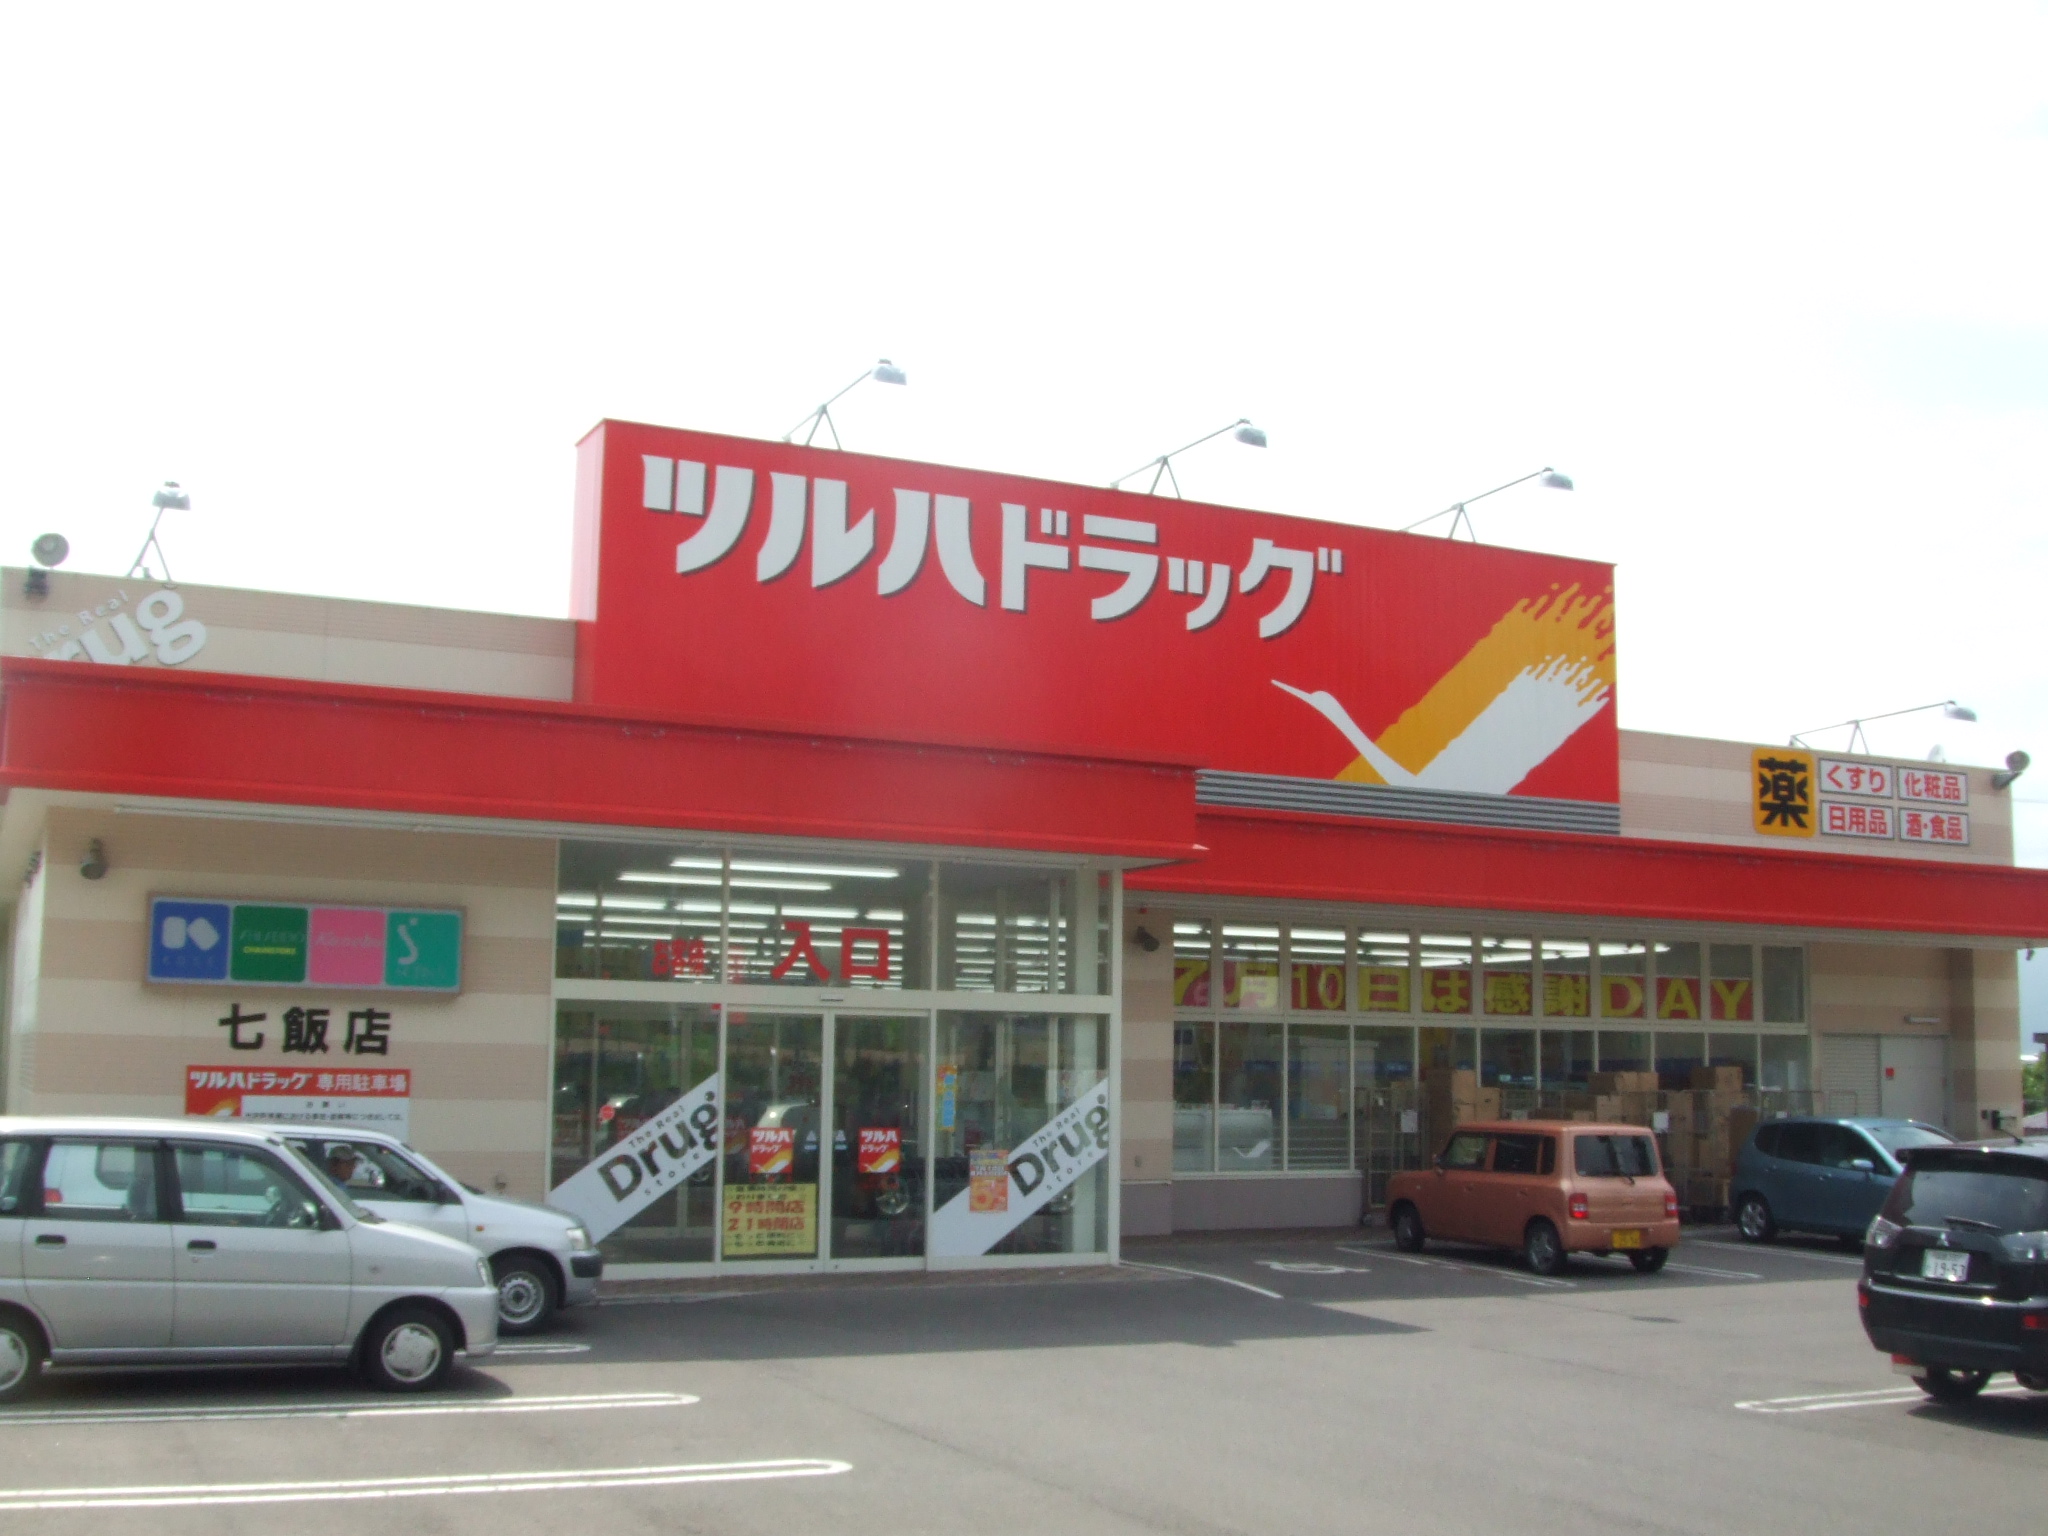 Dorakkusutoa. Tsuruha drag Nanae shop 873m until (drugstore)